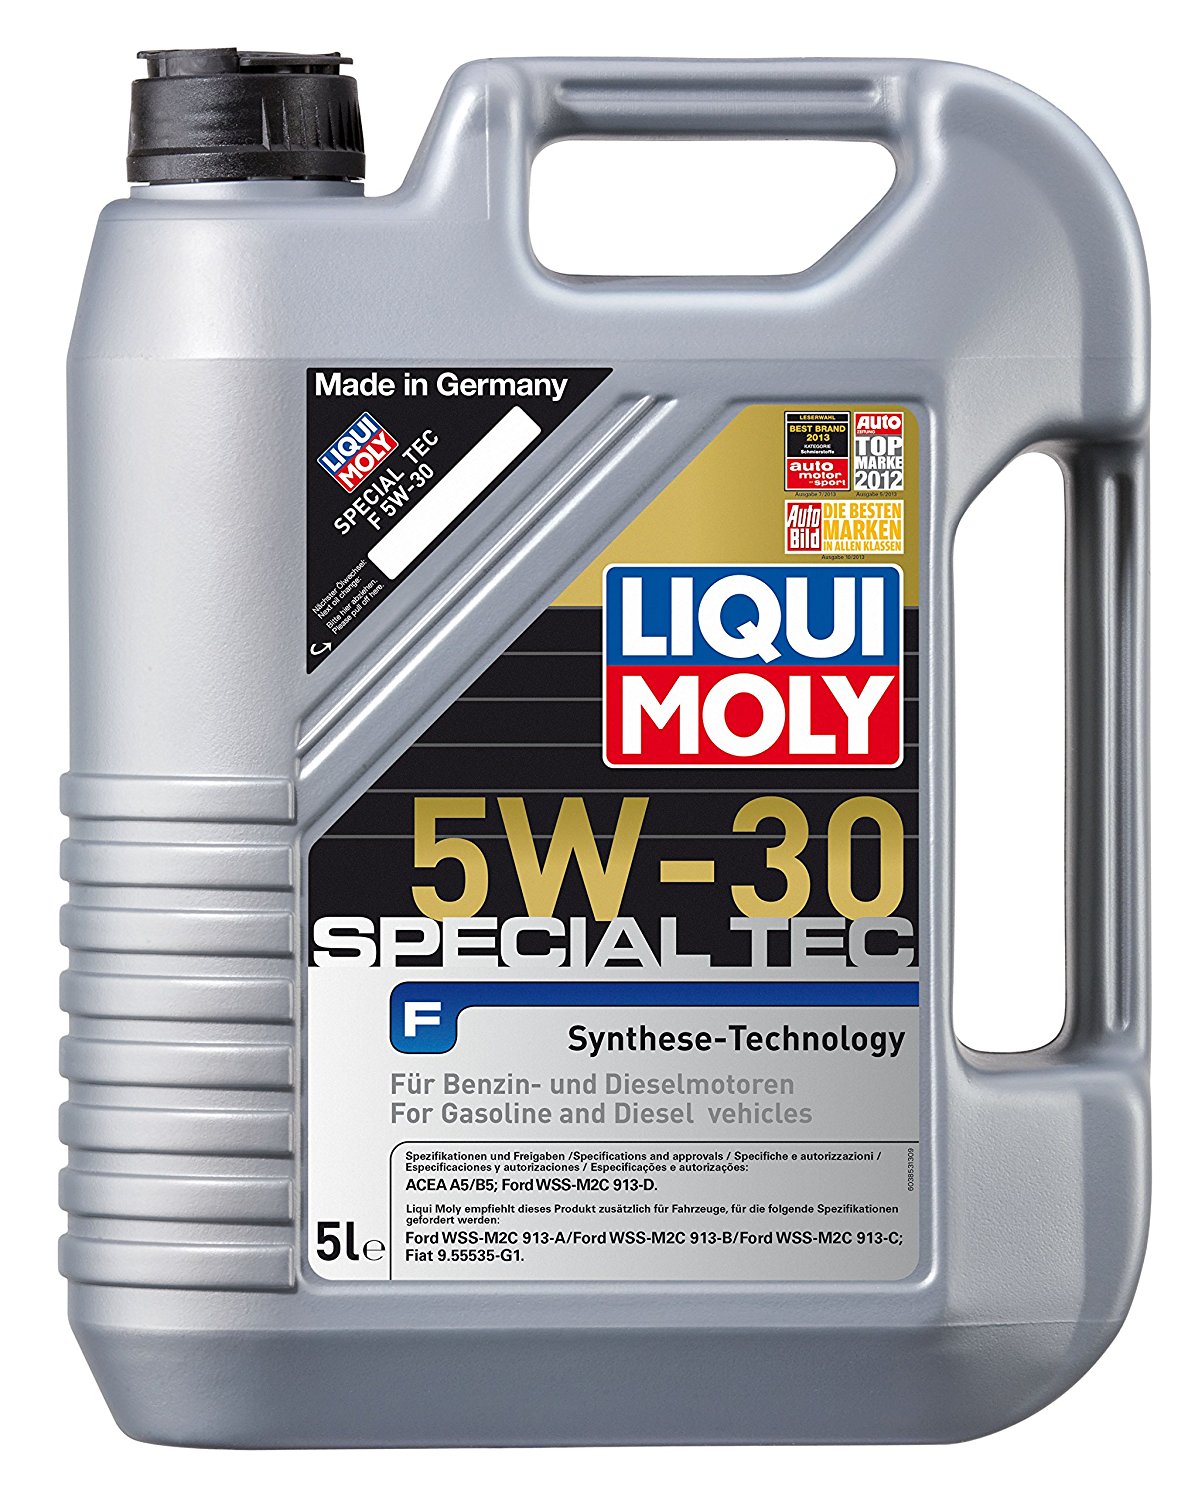 5W-30 Liqui Moly 3853 Special Tec F Motoröl 5 Liter